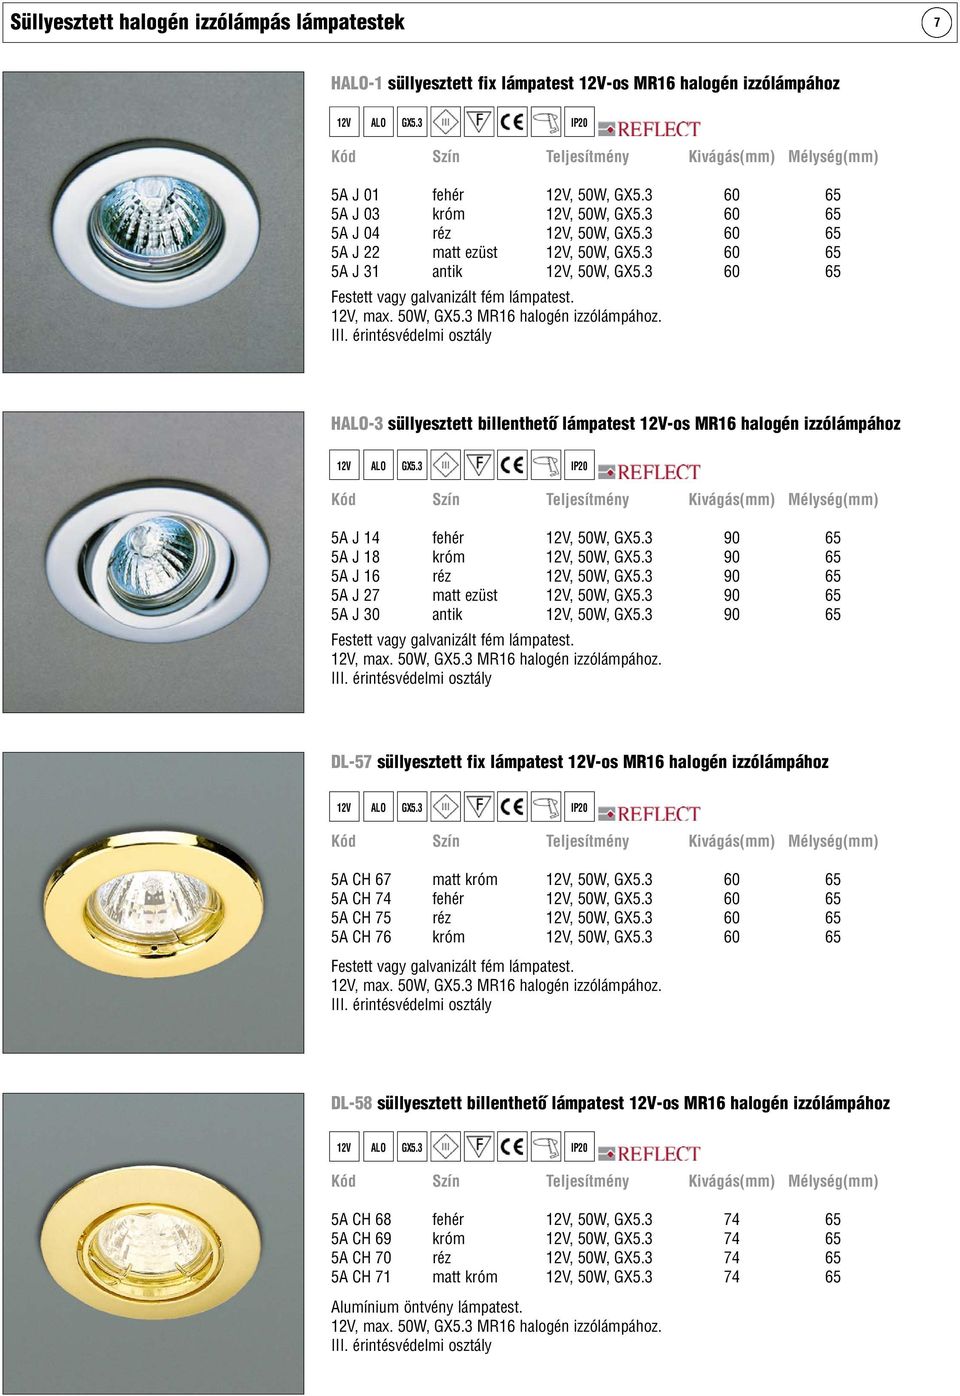 3 60 65 5A J 31 antik 12V, 50W, GX5.3 60 65 Festett vagy galvanizált fém lámpatest. 12V, max. 50W, GX5.3 MR16 halogén izzólámpához.